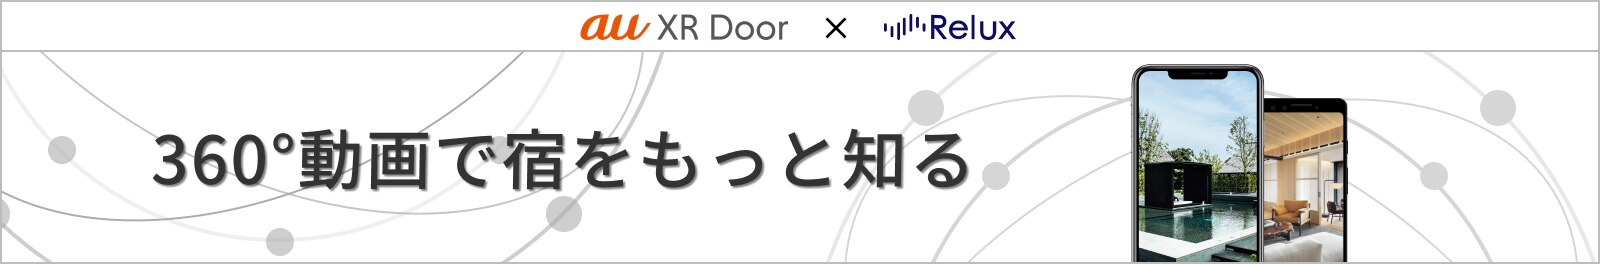 au XR Door × Relux 360°動画で宿をもっと知る